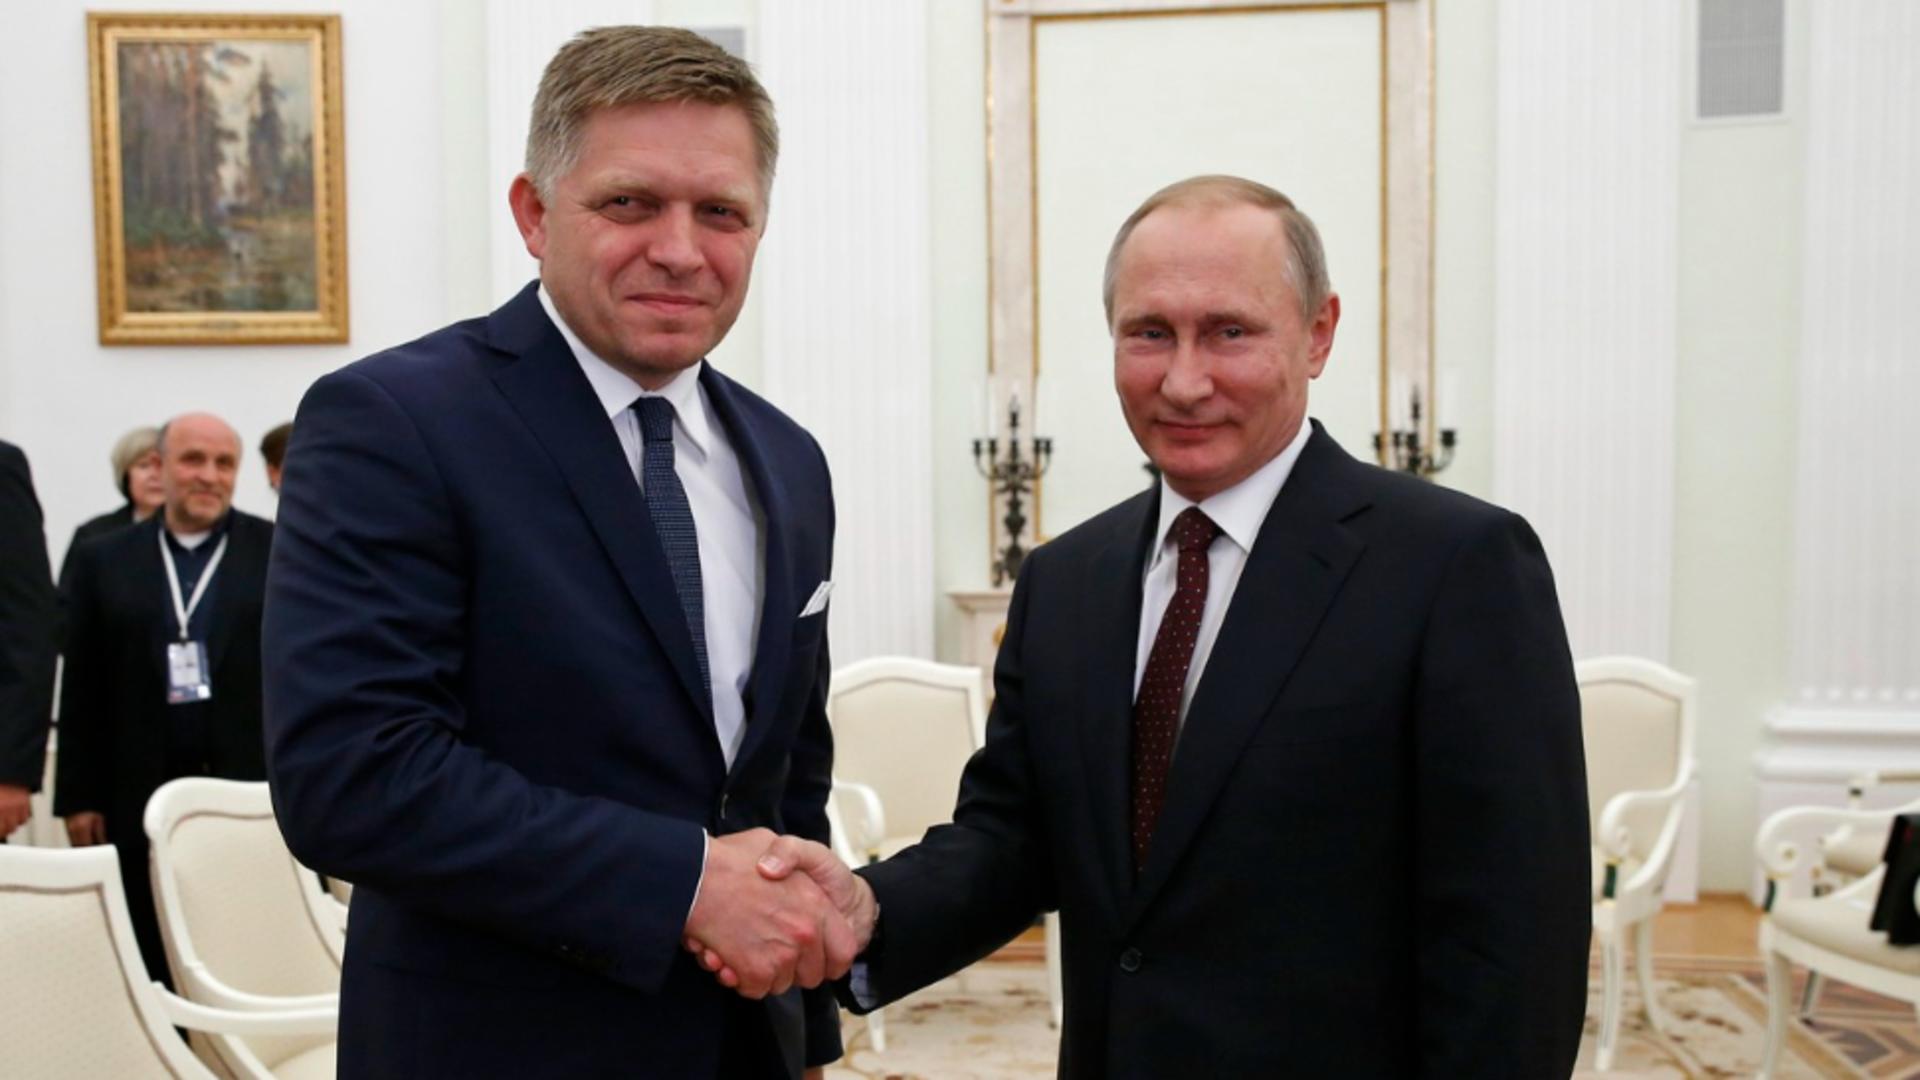 Slovacia sfidează UE și încetează ajutorul militar pentru Ucraina – Premierul Robert Fico, pro-rus și aliat al lui Viktor Orban, a făcut anunțul